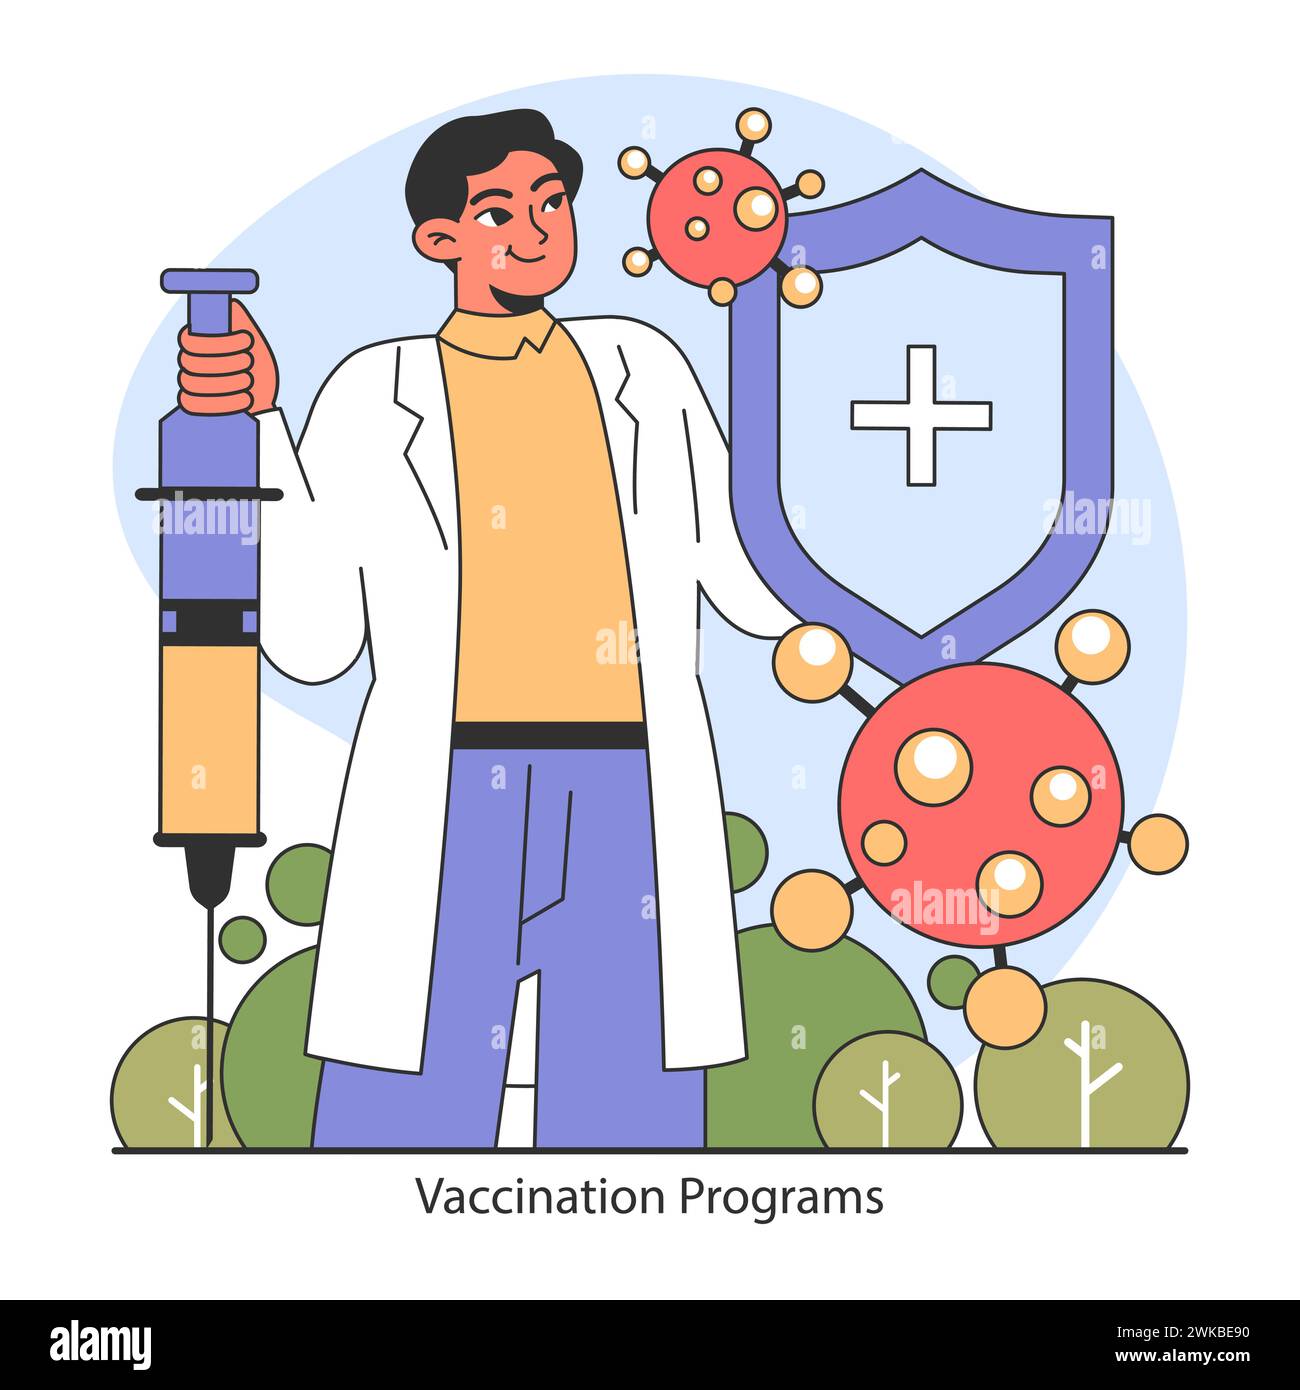 Programa de vacunación. Trabajador sanitario seguro con una jeringa, que representa el poder de la inmunización contra las enfermedades. Un compromiso con la salud y la seguridad públicas. Ilustración vectorial plana. Ilustración del Vector